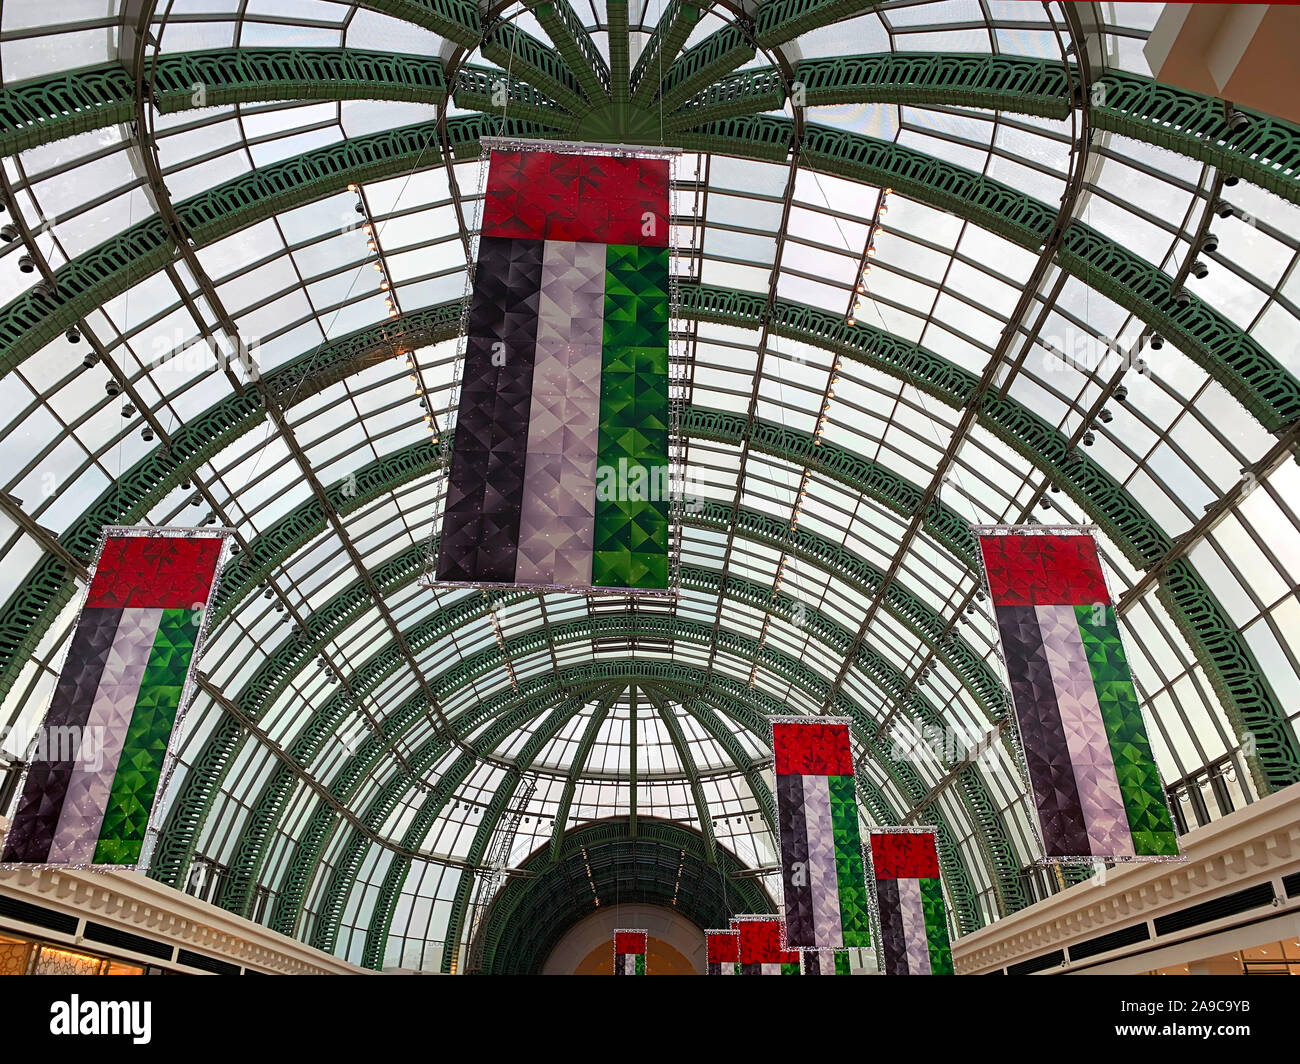 Dubaï / Emirats arabes unis - 10 novembre 2019 : décorations pour la Journée nationale des EAU dans centre commercial. Décoration drapeaux nationaux des EAU. Jour de l'indépendance. Drapeau - symbole d'independe Banque D'Images